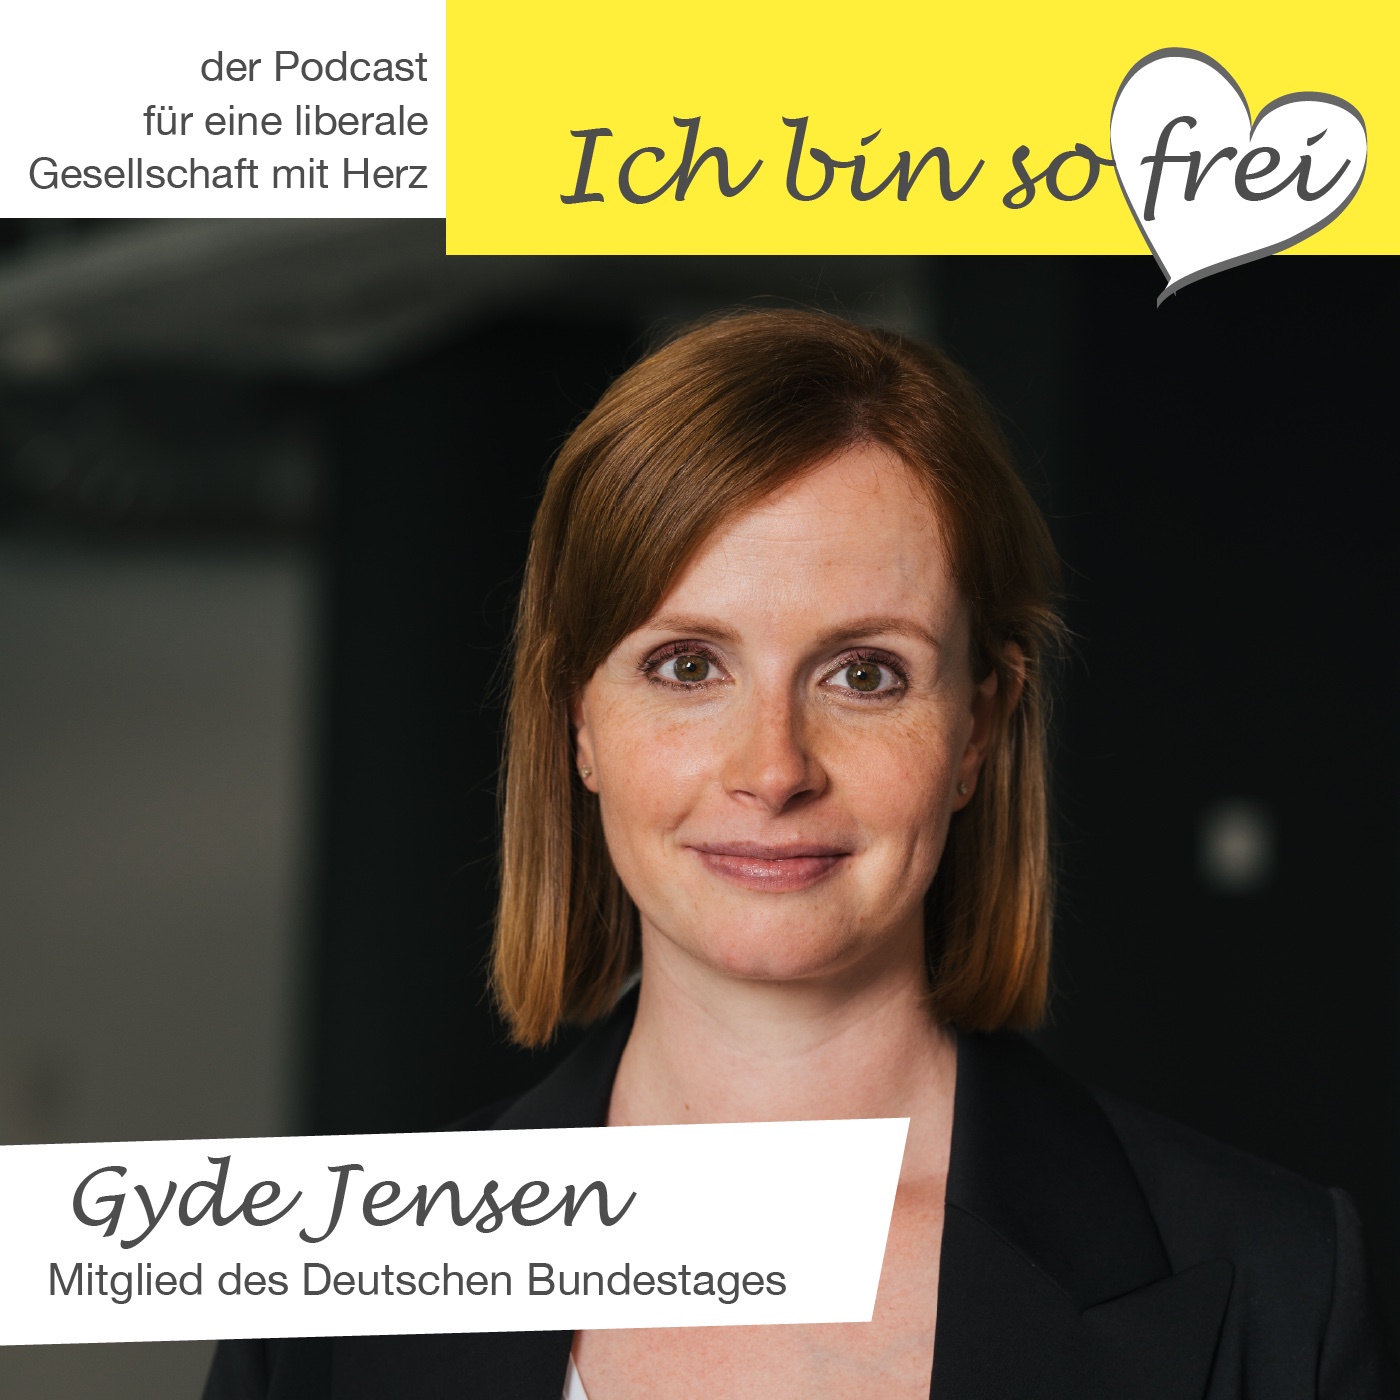 #5 MdB Gyde Jensen über Eigenverantwortung, Menschenrechte und Heldinnen